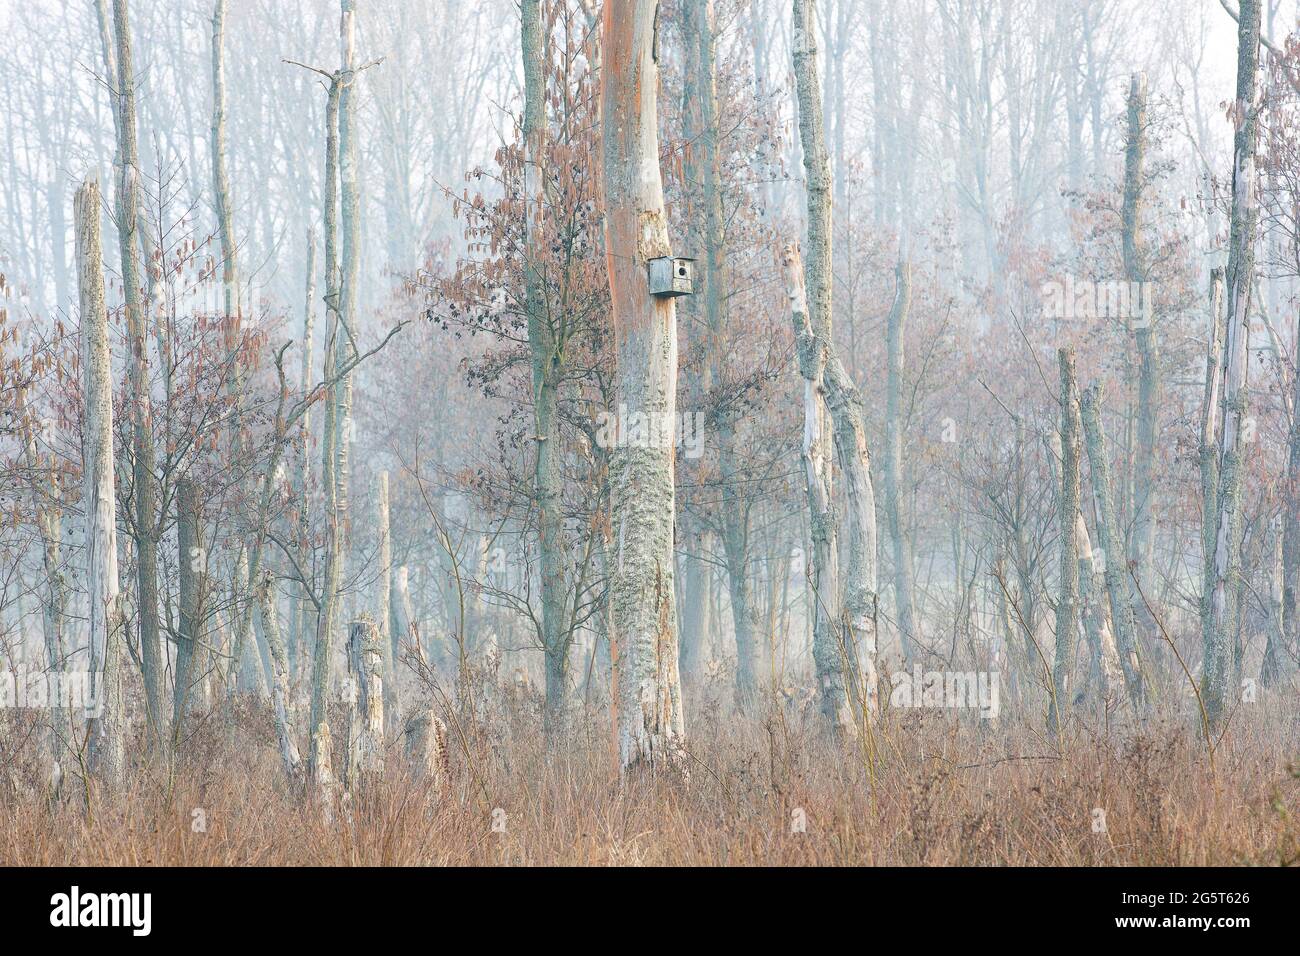 common alder, black alder, European alder (Alnus glutinosa), brook forest in Wellemeersen nature reserve, Belgium, East Flanders, Wellemeersen, Aalst Stock Photo